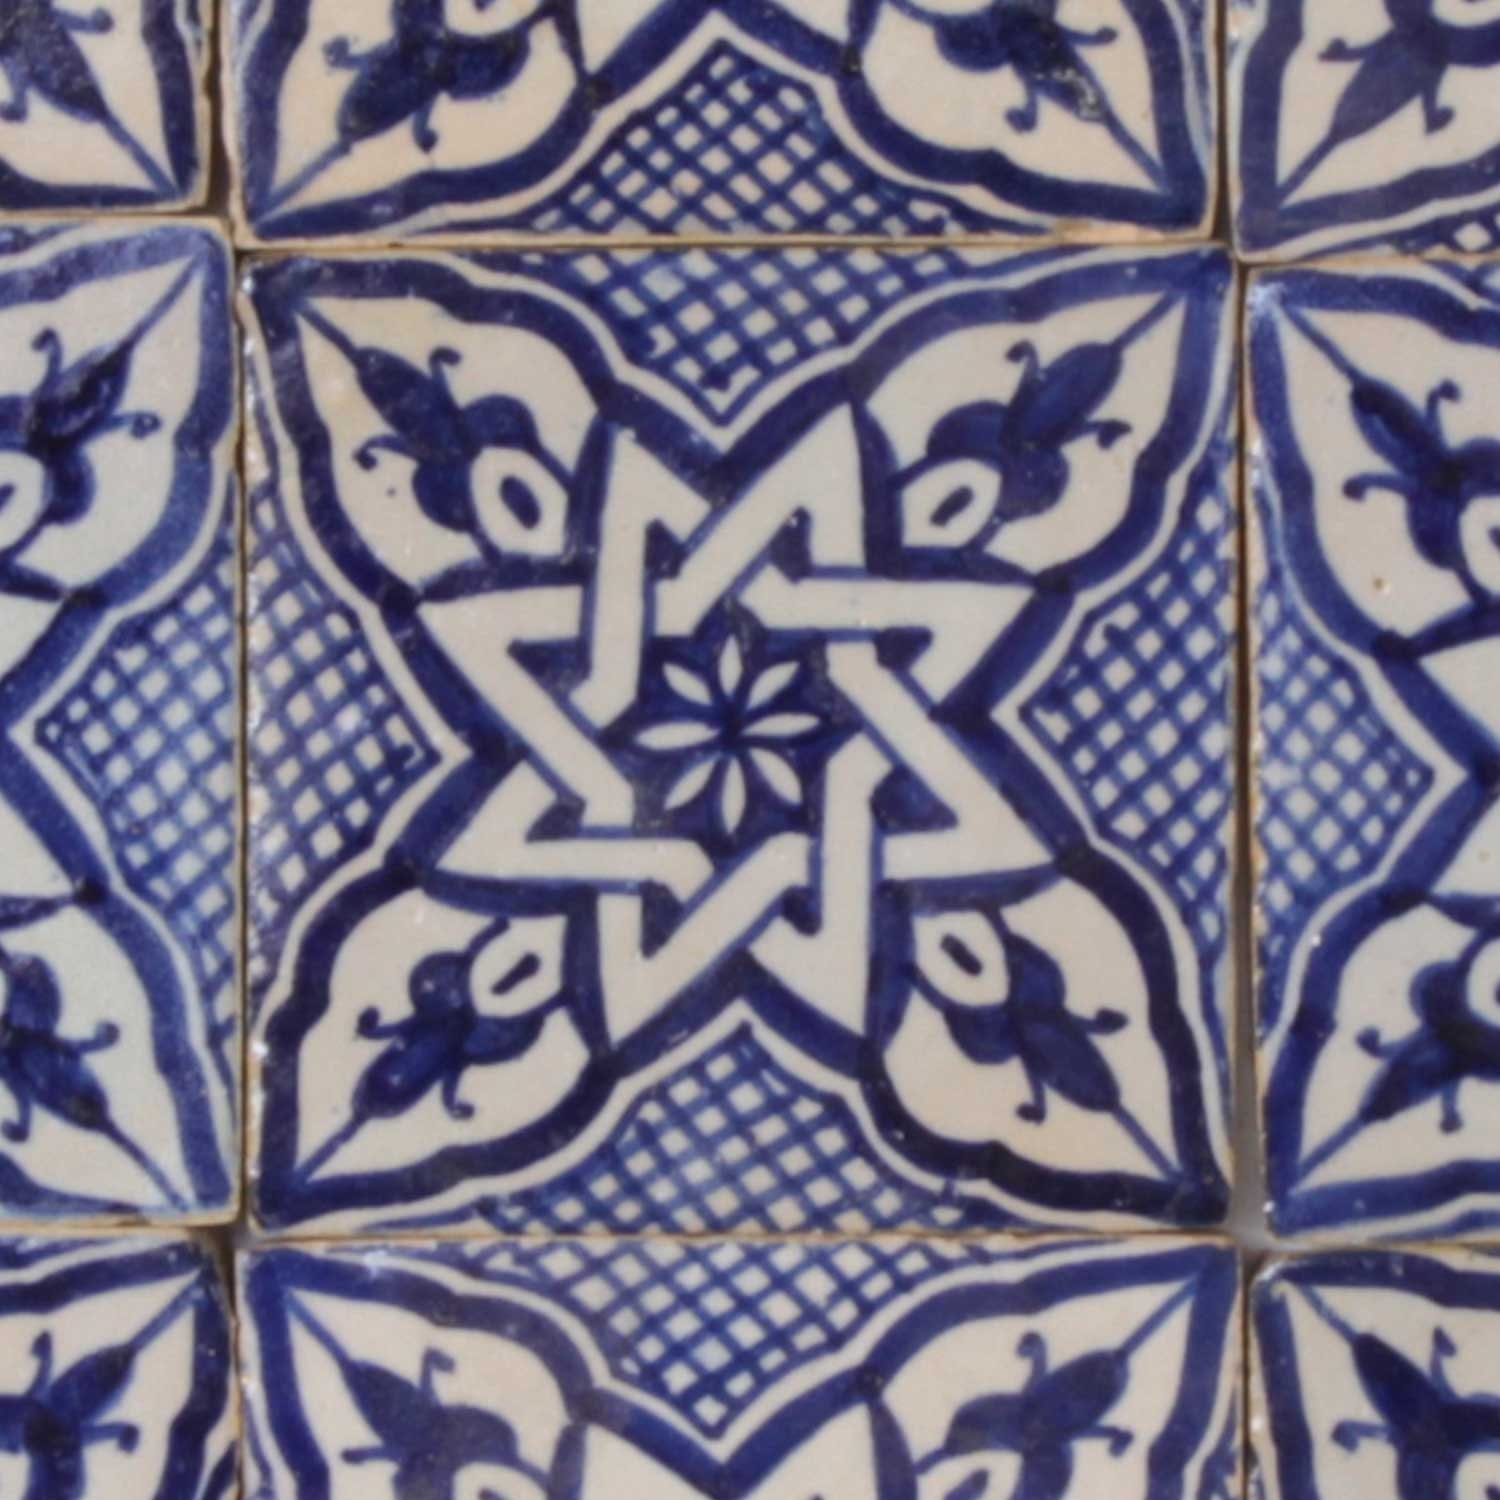 Blau 10 cm handbemalte Ton Beige Marokkanische schöne Keramikfliese x Casa und Kunsthandwerk aus Küche FL7240, Marokko Dusche für Wandfliese 10 Daya Moro Badezimmer, Wandfliese